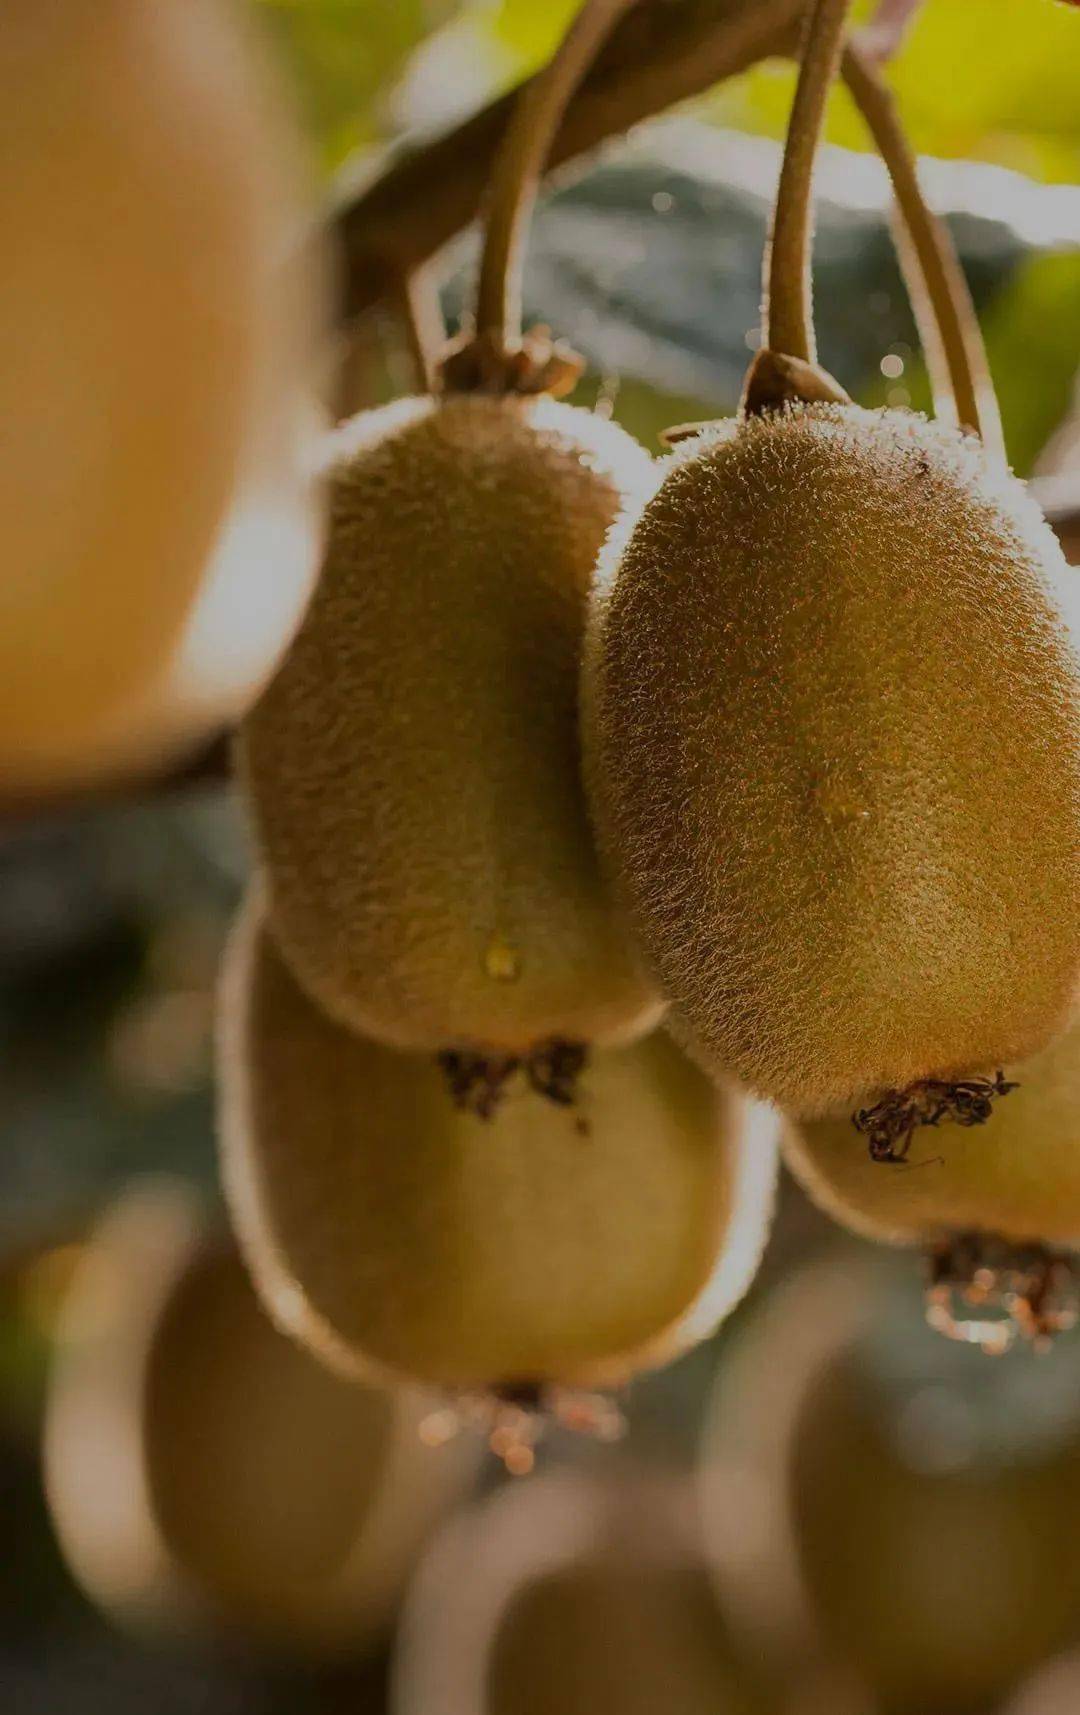 新西兰皇家植物与食品研究院助力佳沛新品 奇异果五彩缤纷超乎想象 | 国际果蔬报道